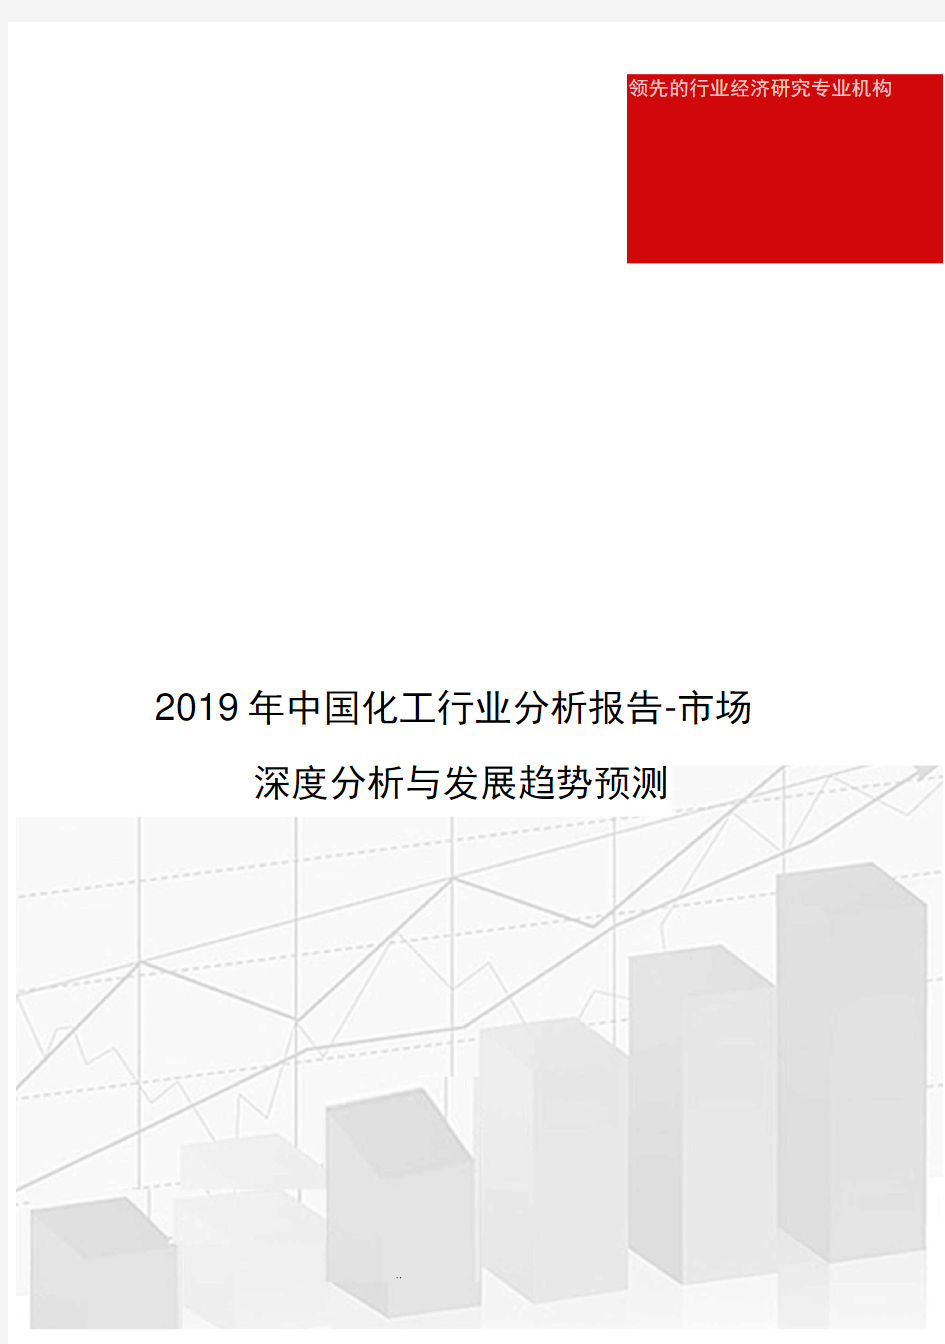 2019年中国化工行业分析报告_市场深度分析与发展趋势预测